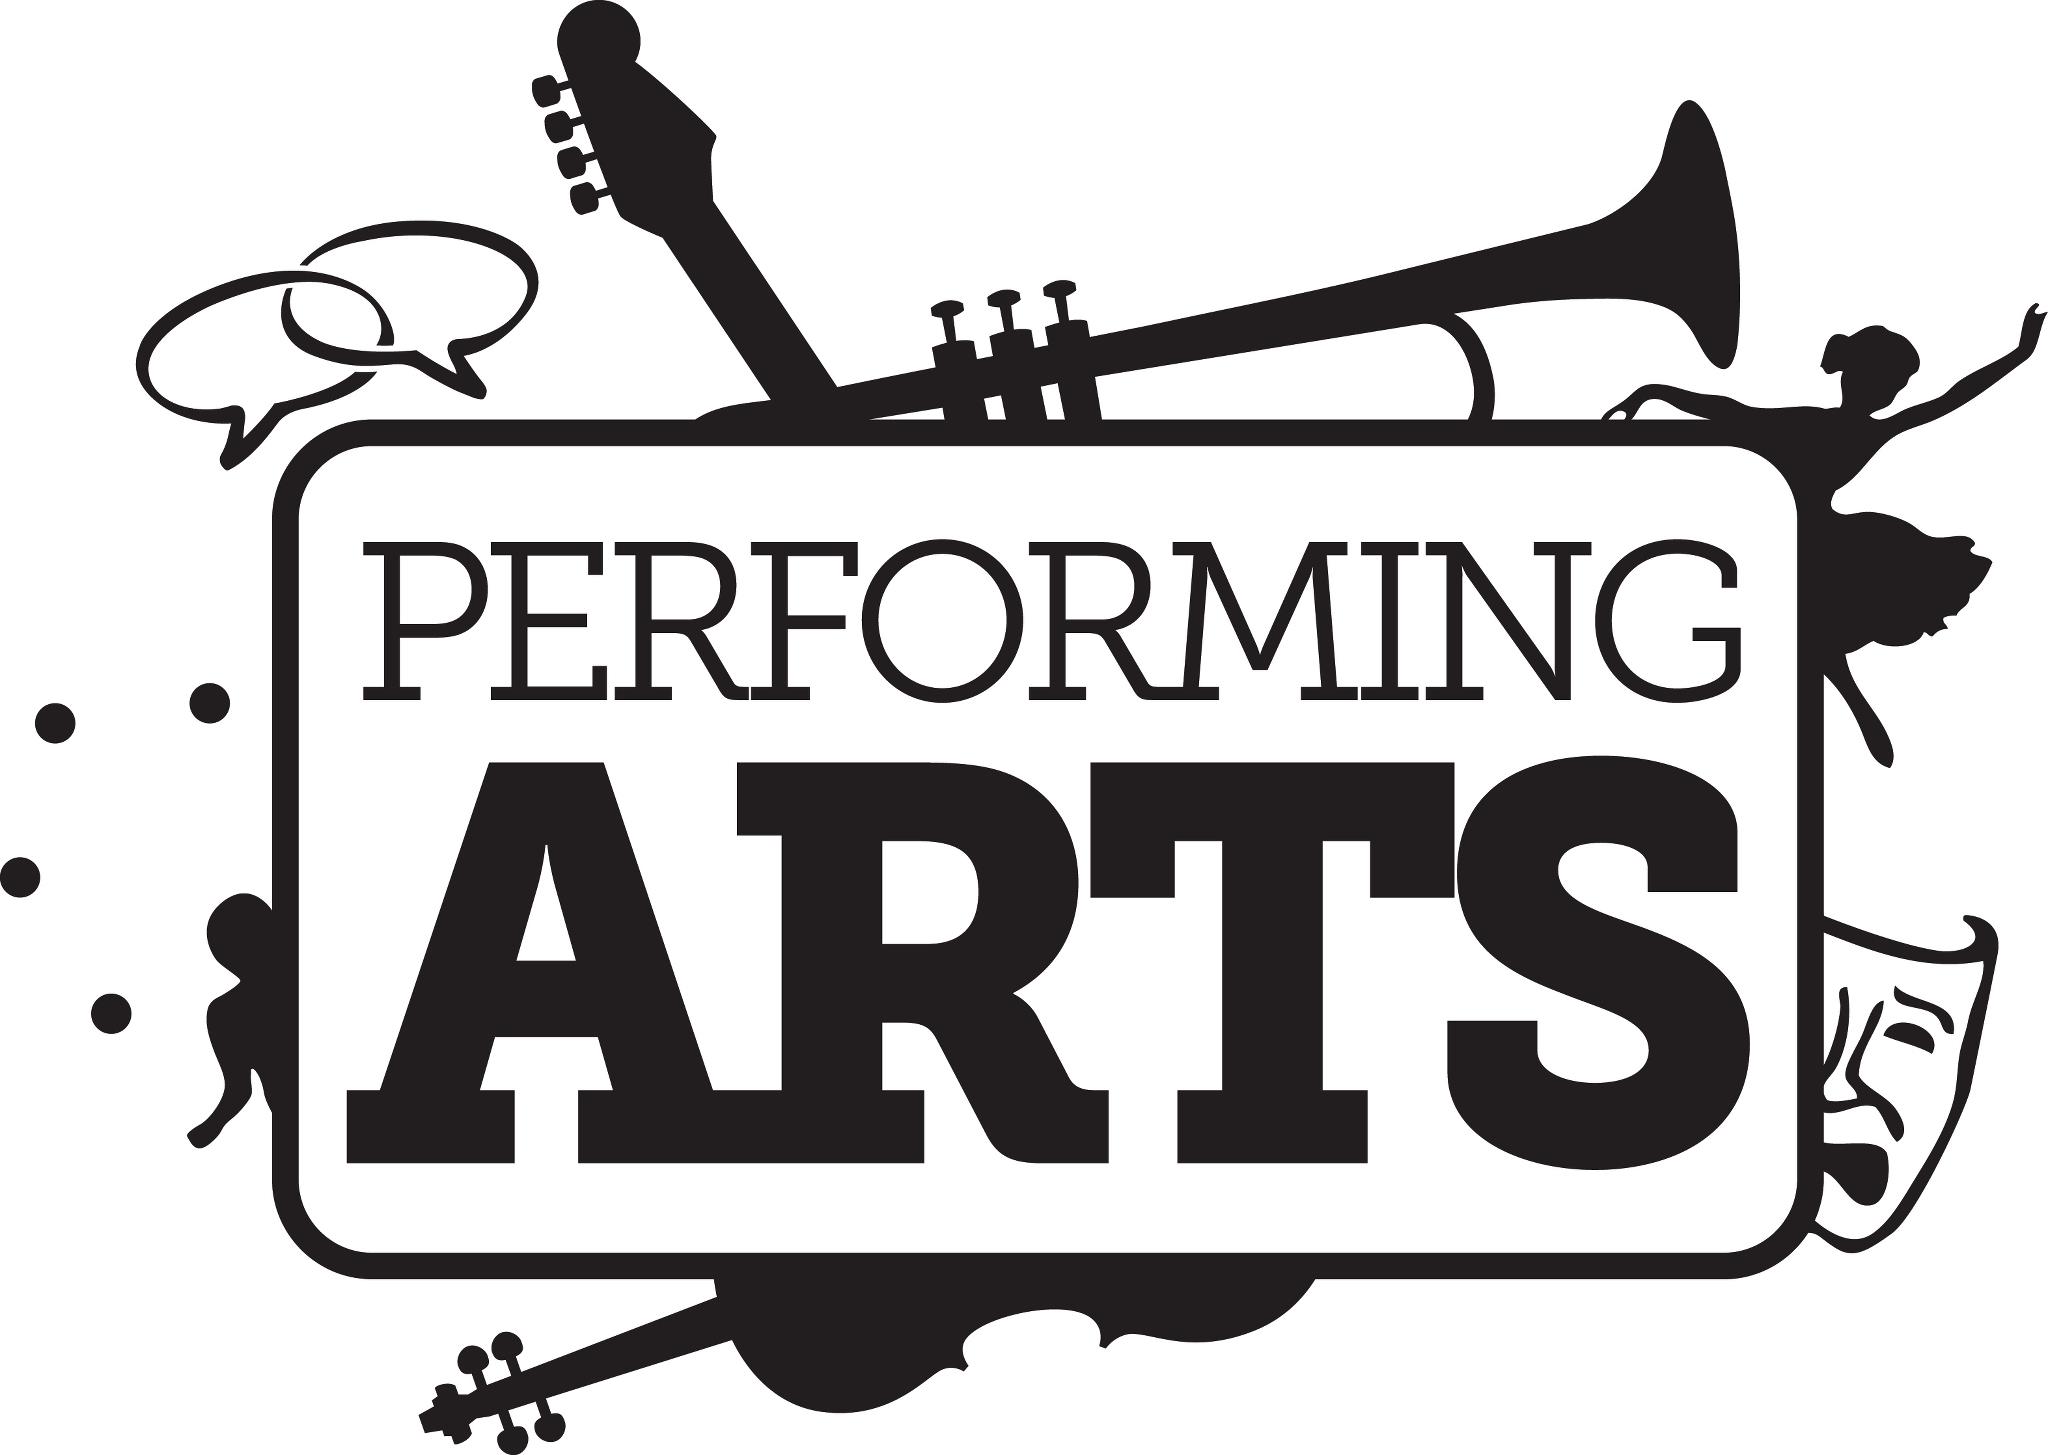 Performing Arts School Logos